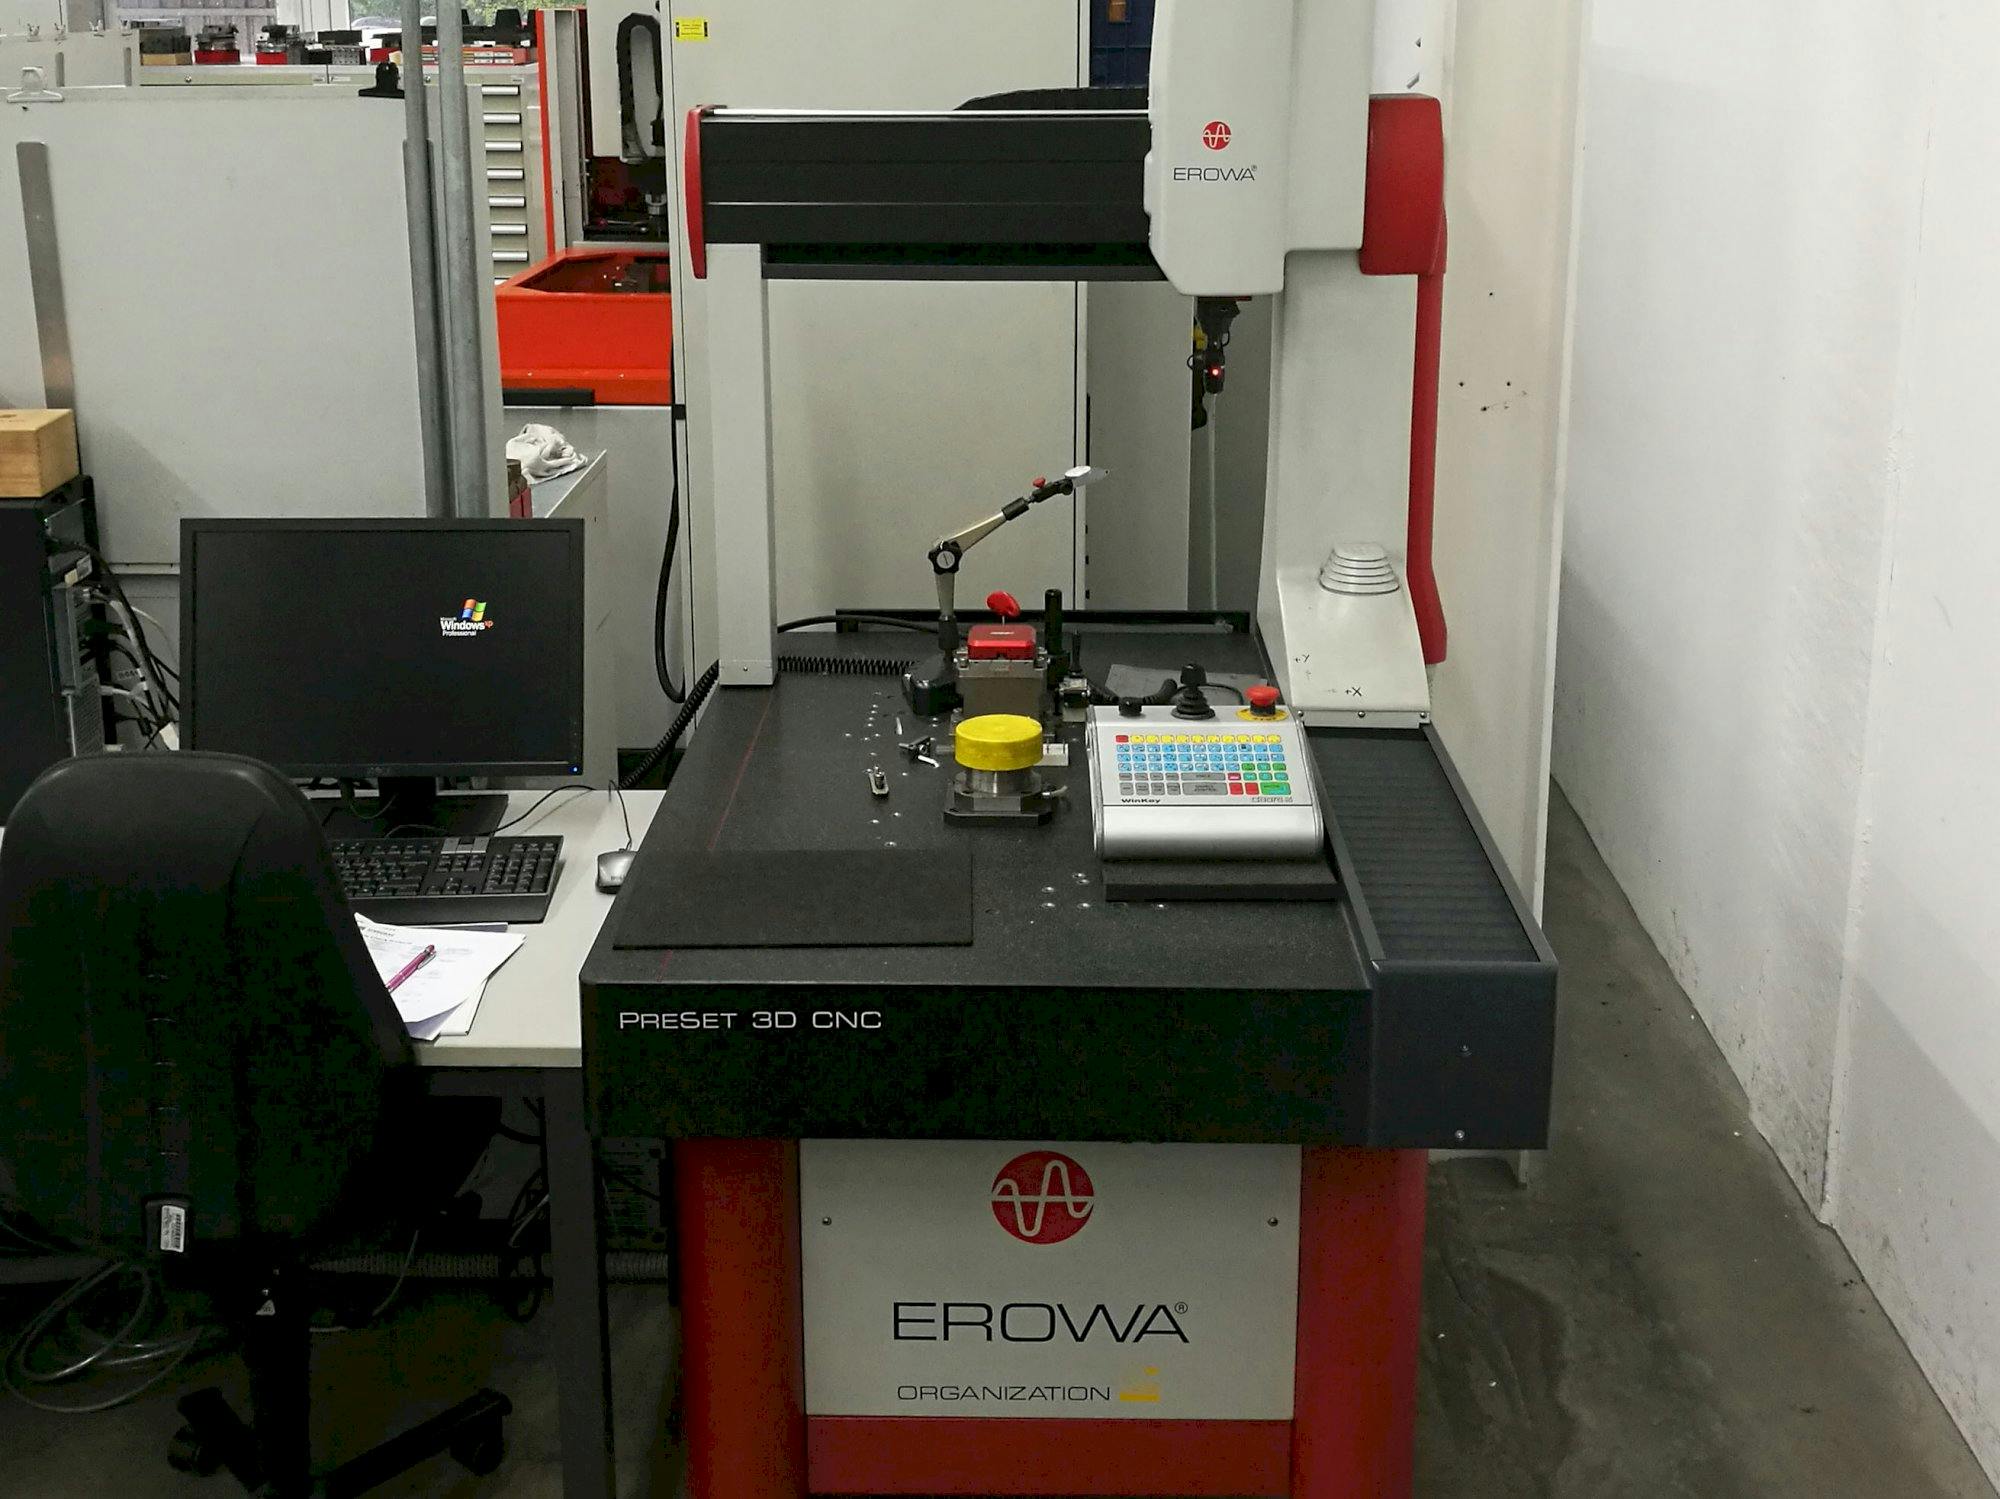 Vista frontal de la máquina EROWA PreSet 3D CNC